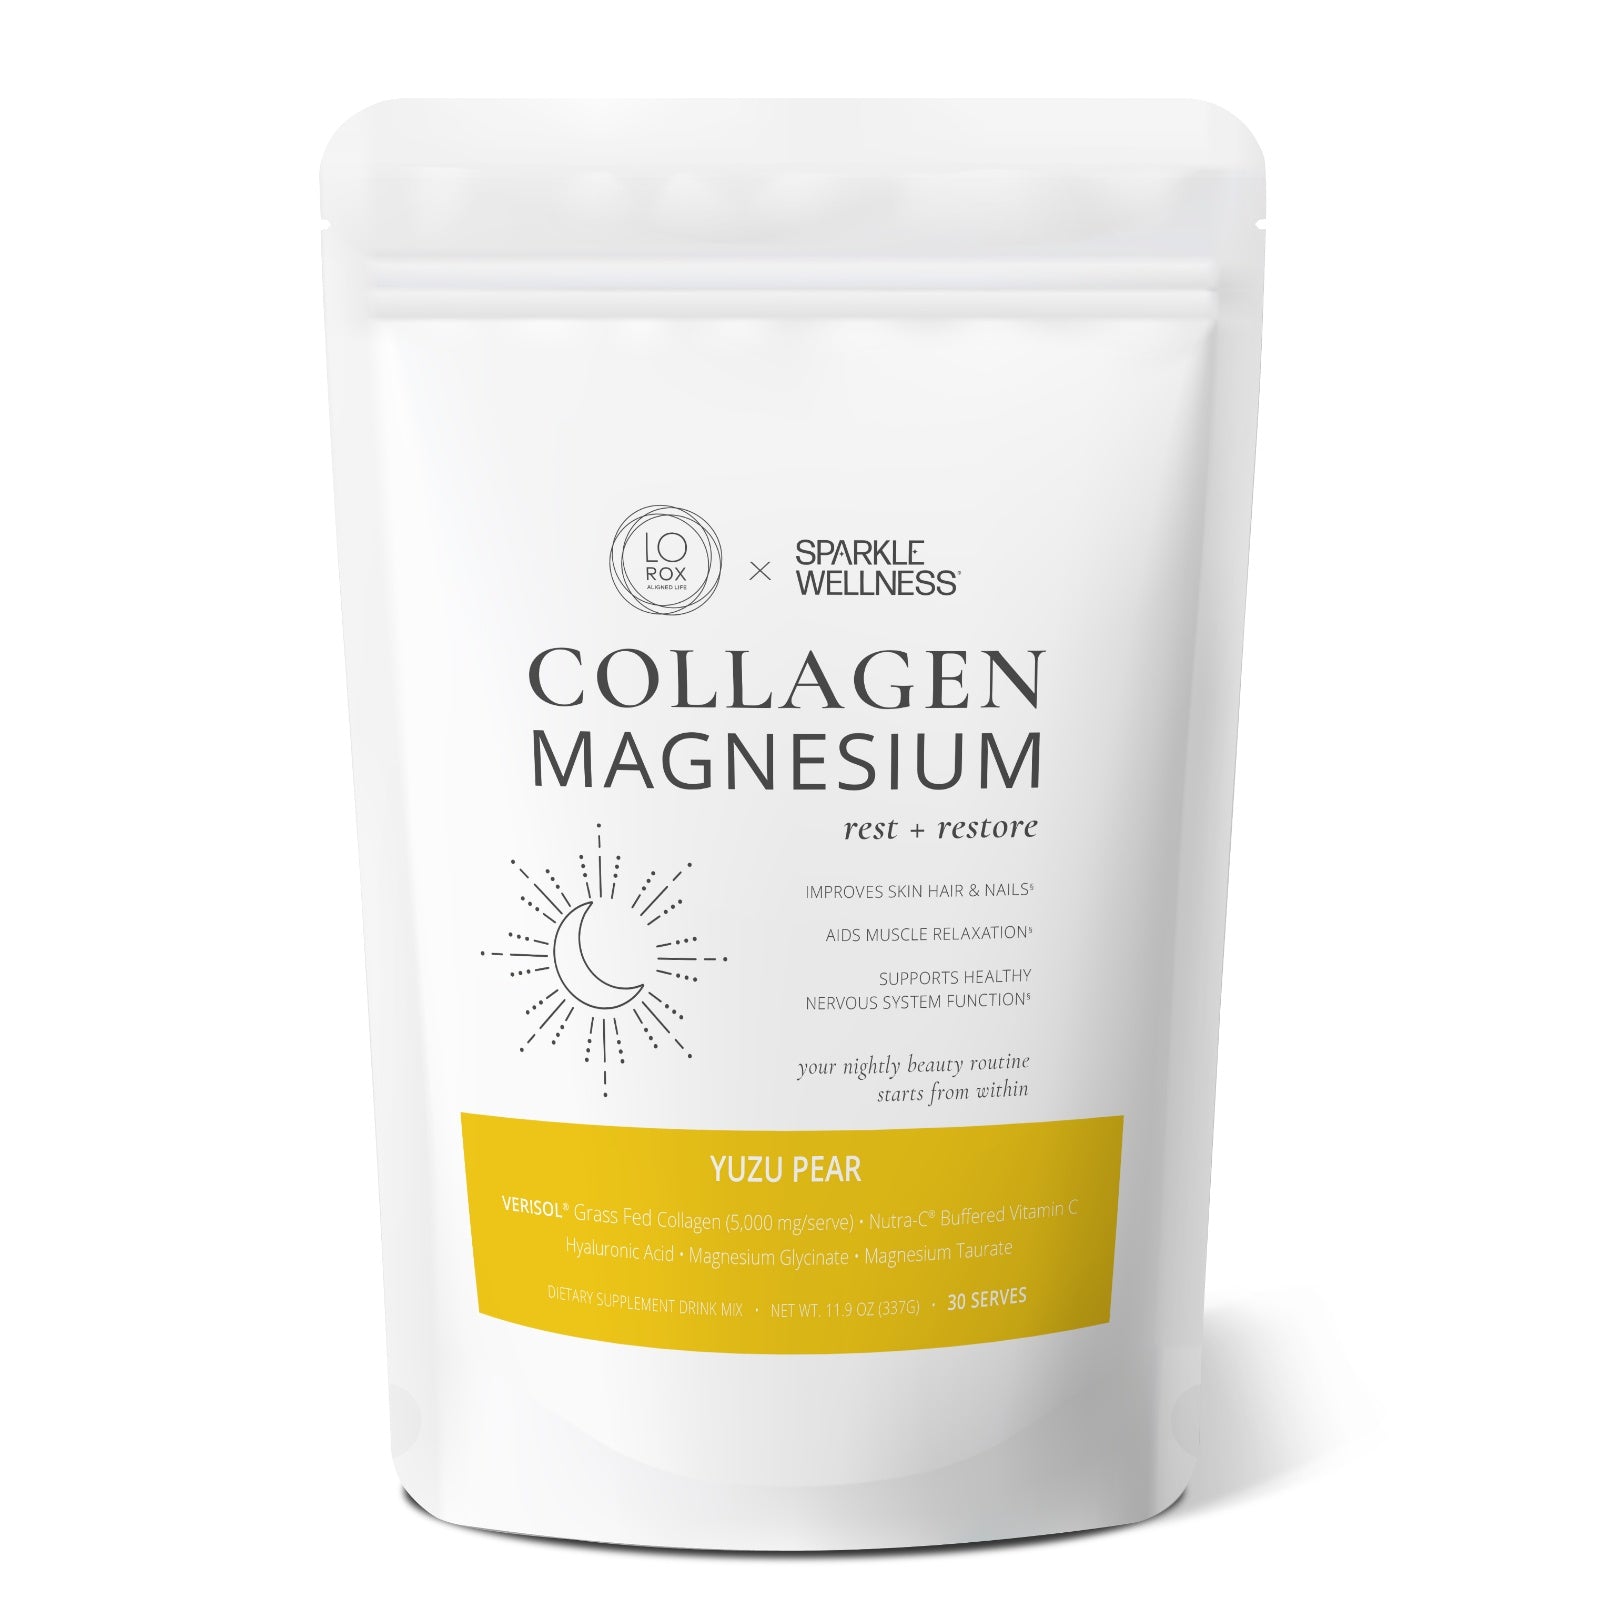 Collagen Magnesium Yuzu Pear, 44336899031258